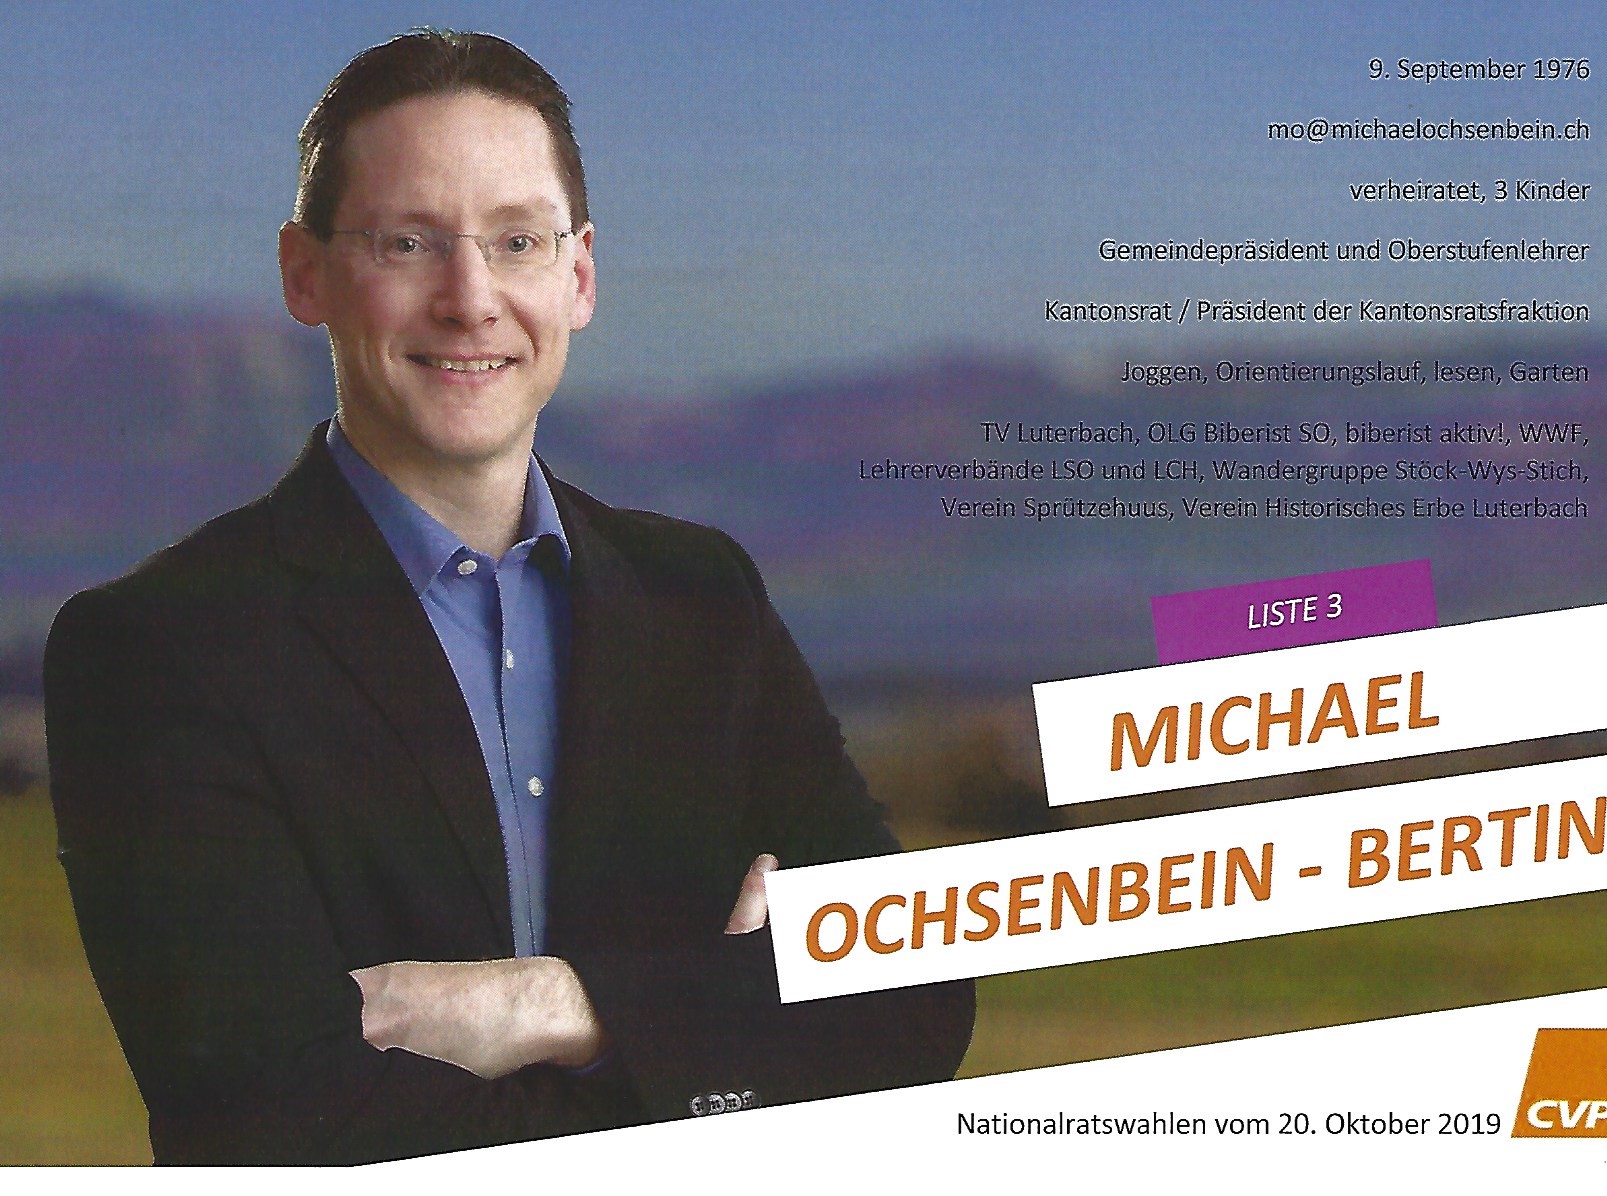 Michael Ochsenbein